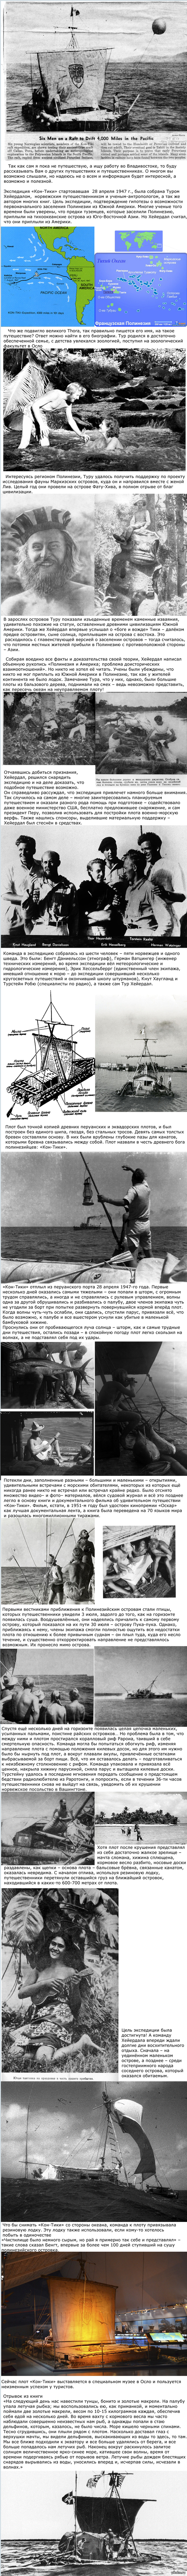 67 years ago, on August 7, 1947, the Kon-Tiki raft reached Raroia Atoll. - Kon-Tiki, Travelers, Expedition, Travel_onl1ne, Longpost